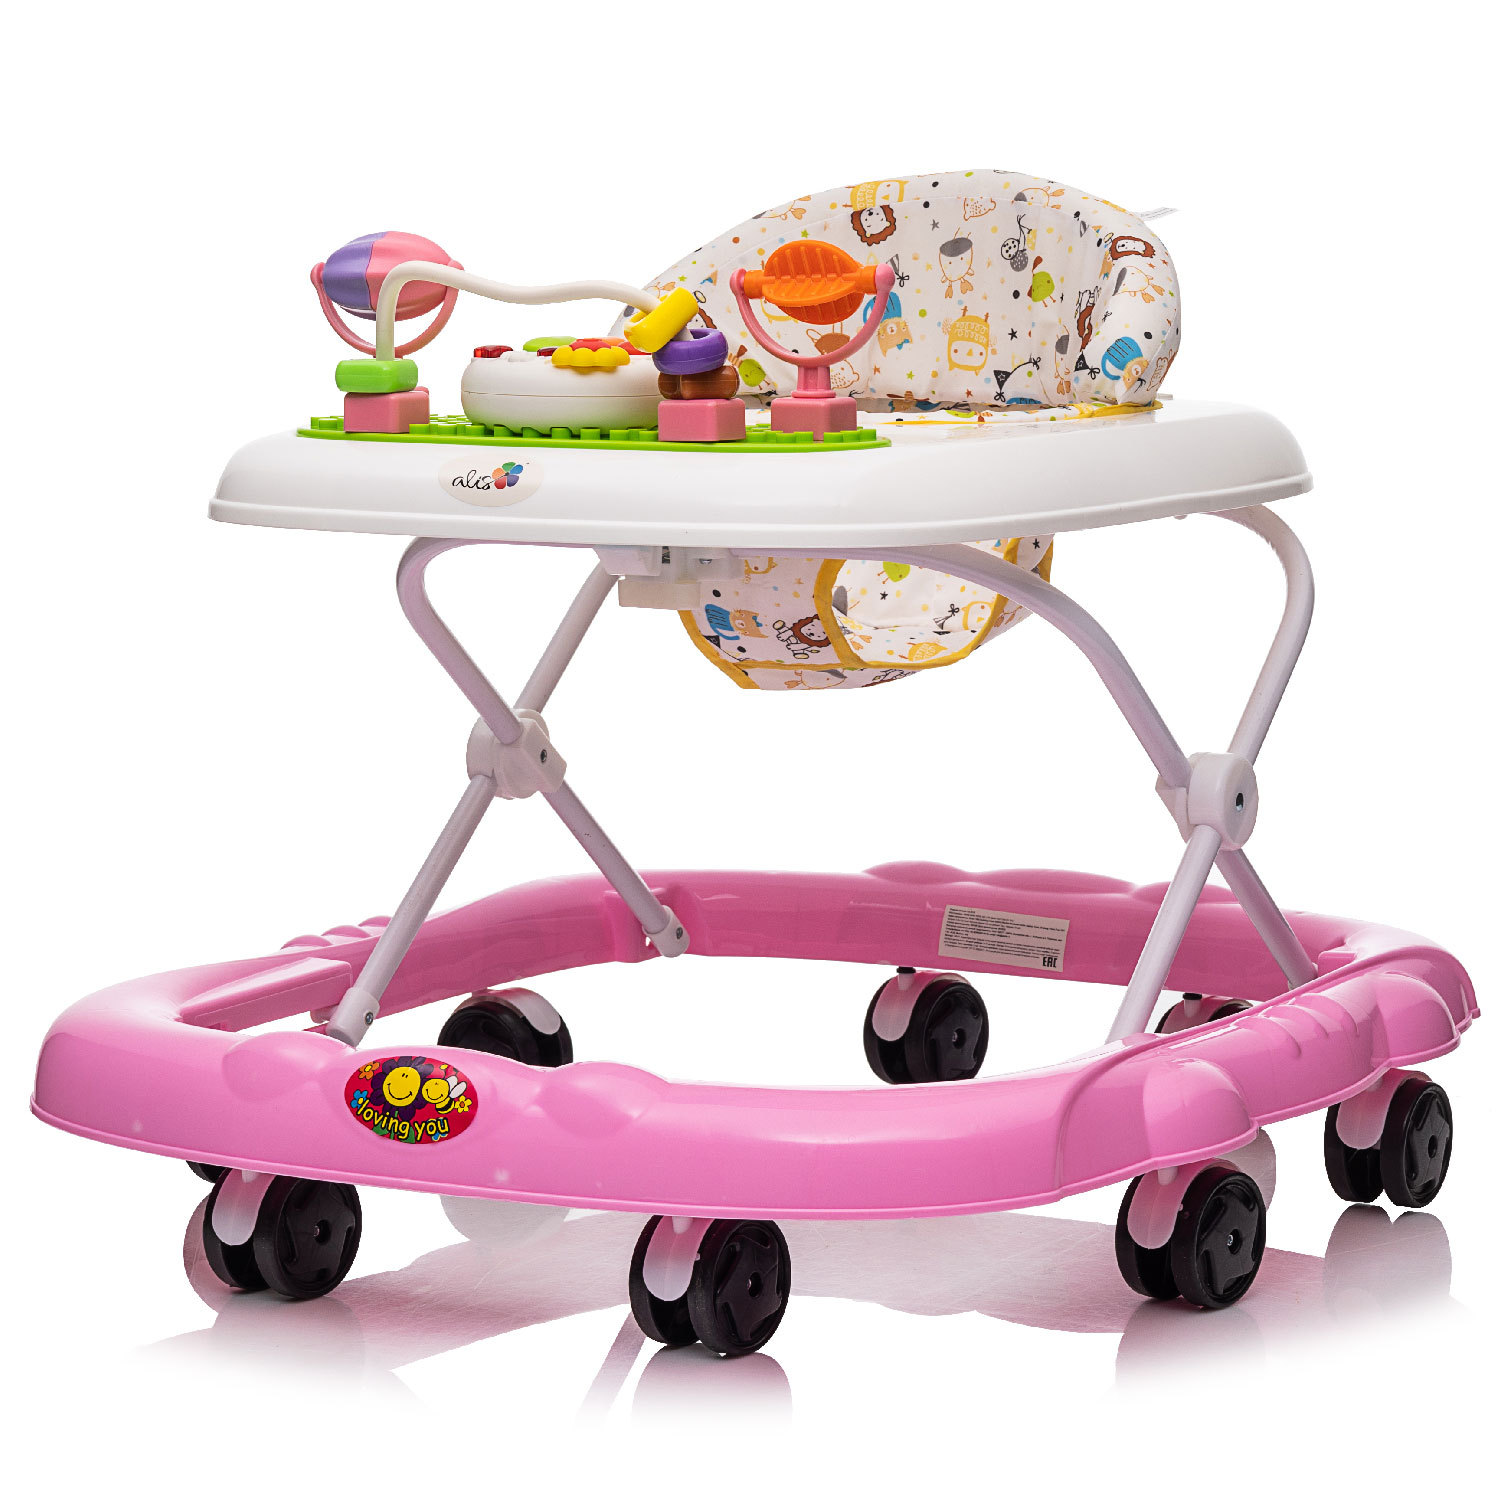 Ходунки Alis Joy музыкальные, 8 колес, розовый ходунки детские alis солнышко оранжевый силиконовые колеса